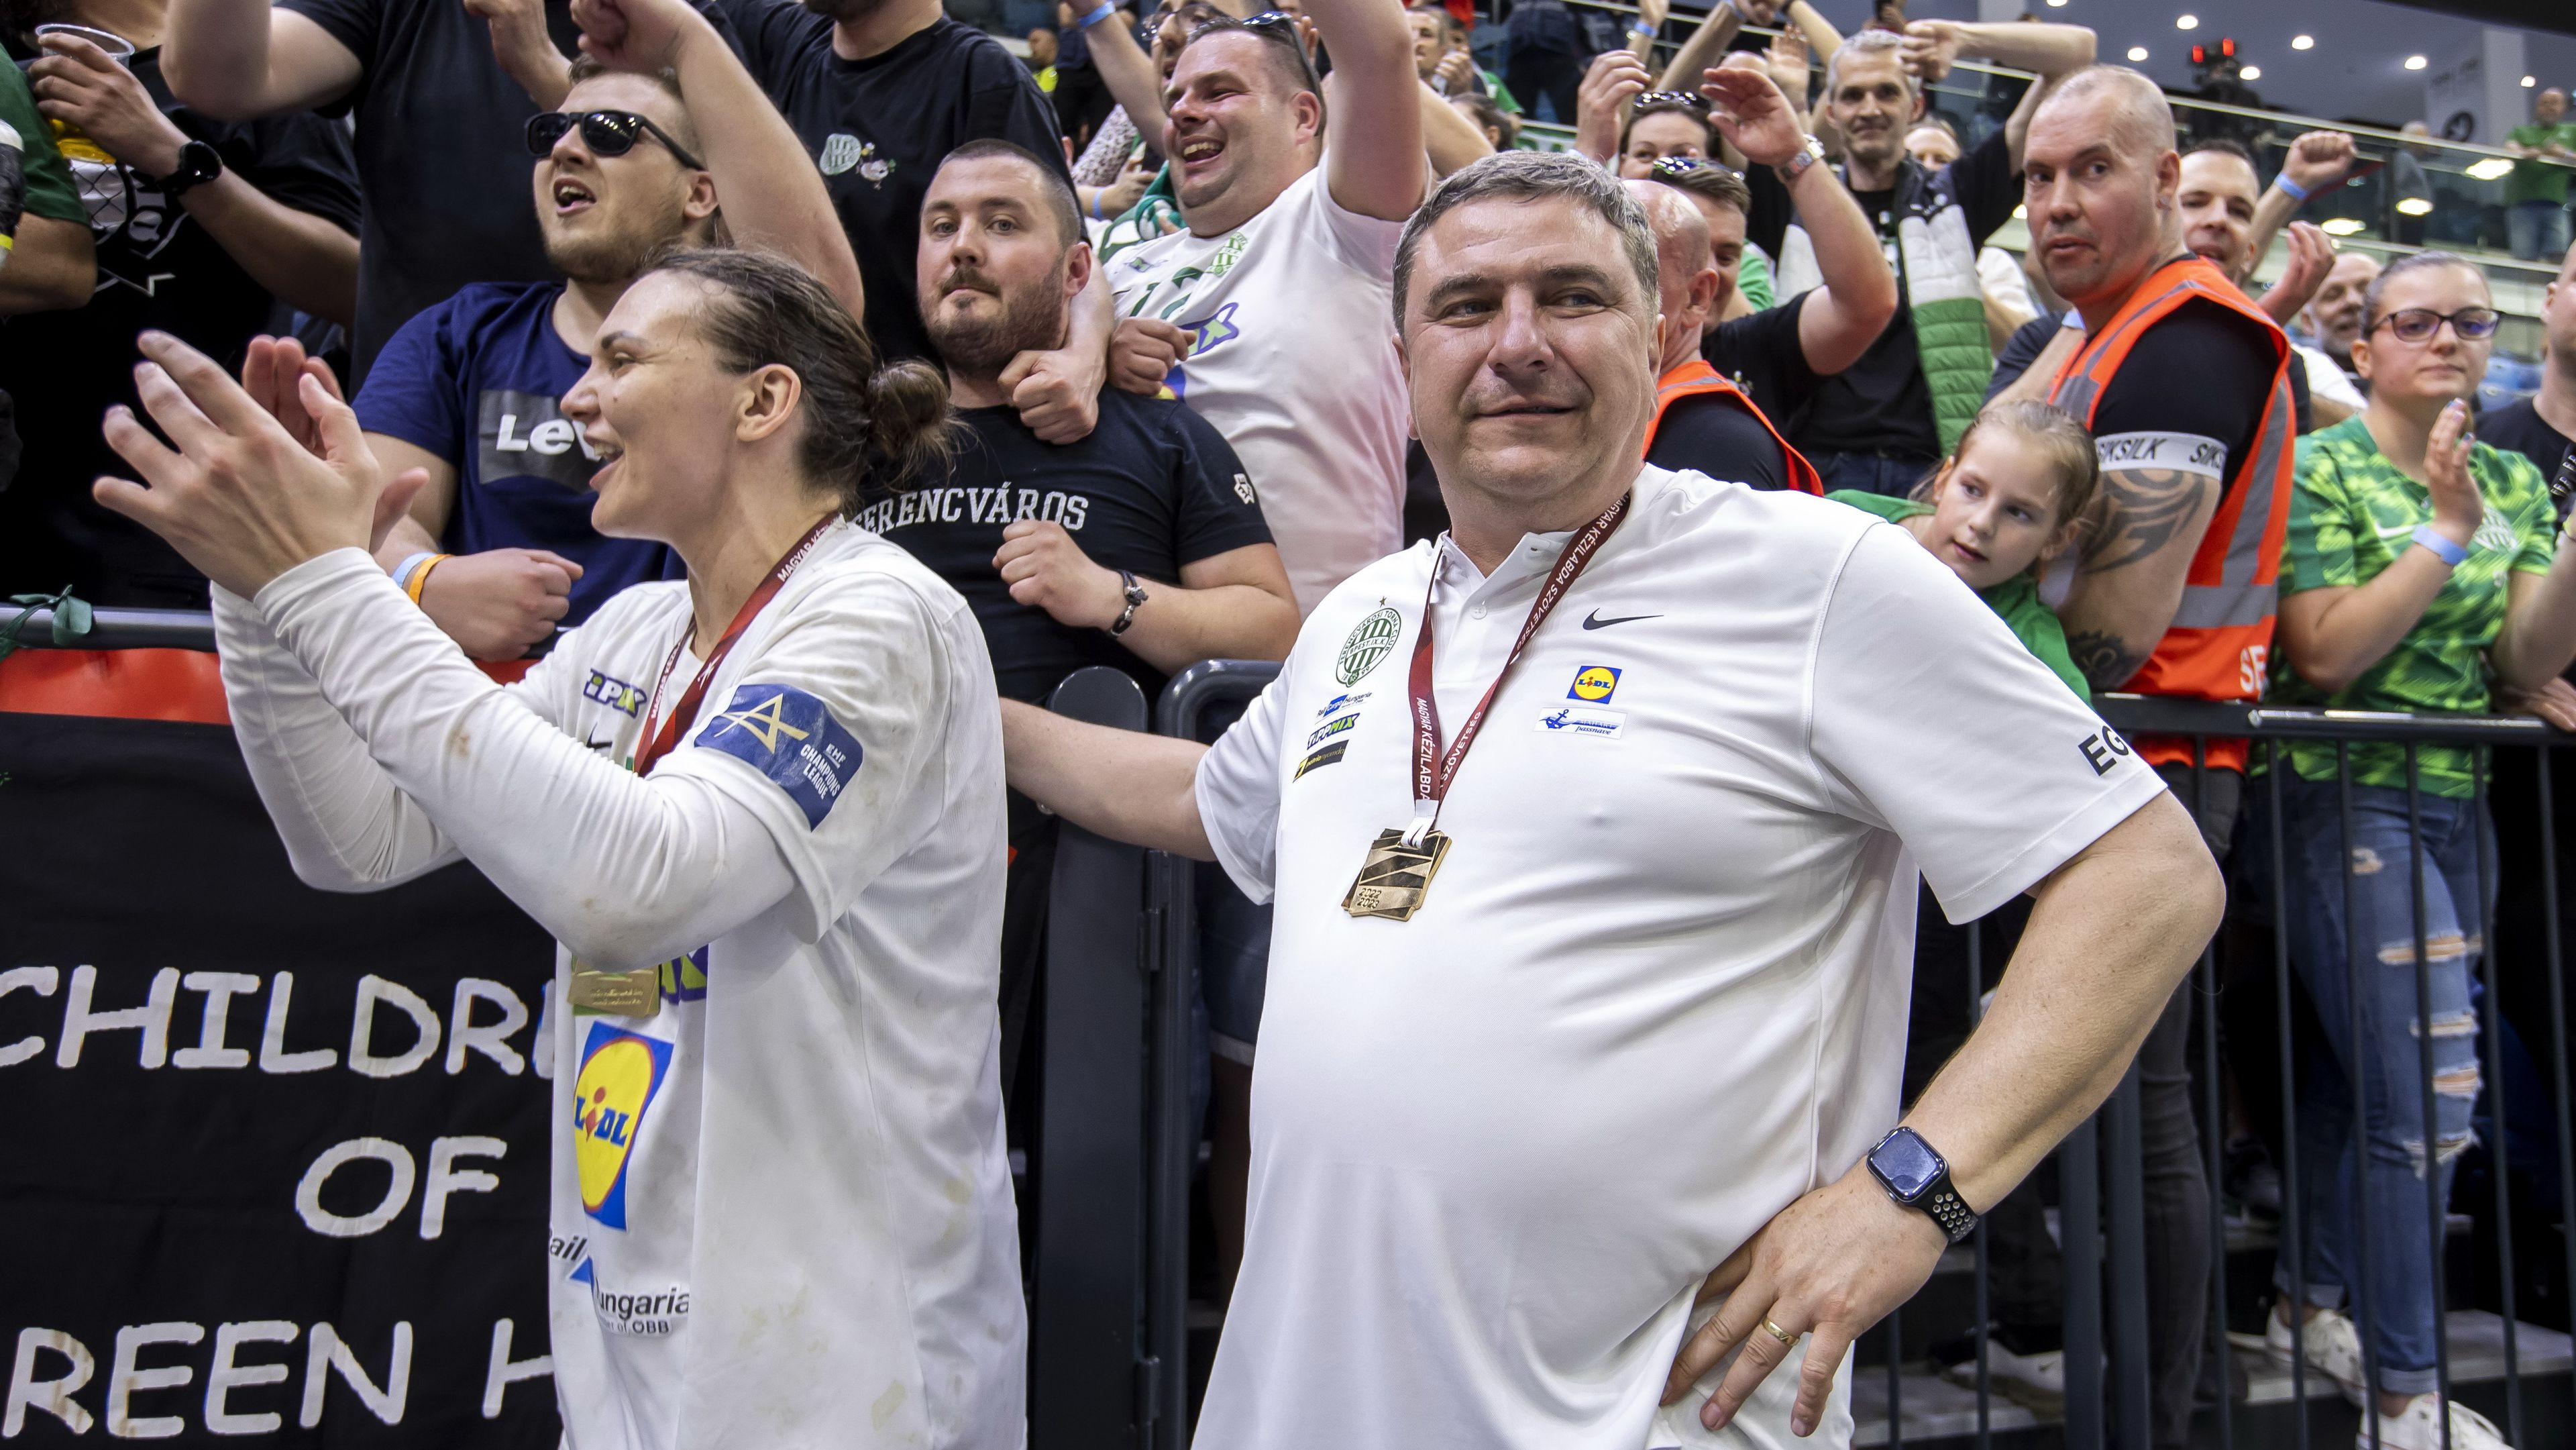 Magyar házidöntőről álmodnak a szurkolók, nézőcsúcsot remélnek a szervezők – érdekességek a final fourról